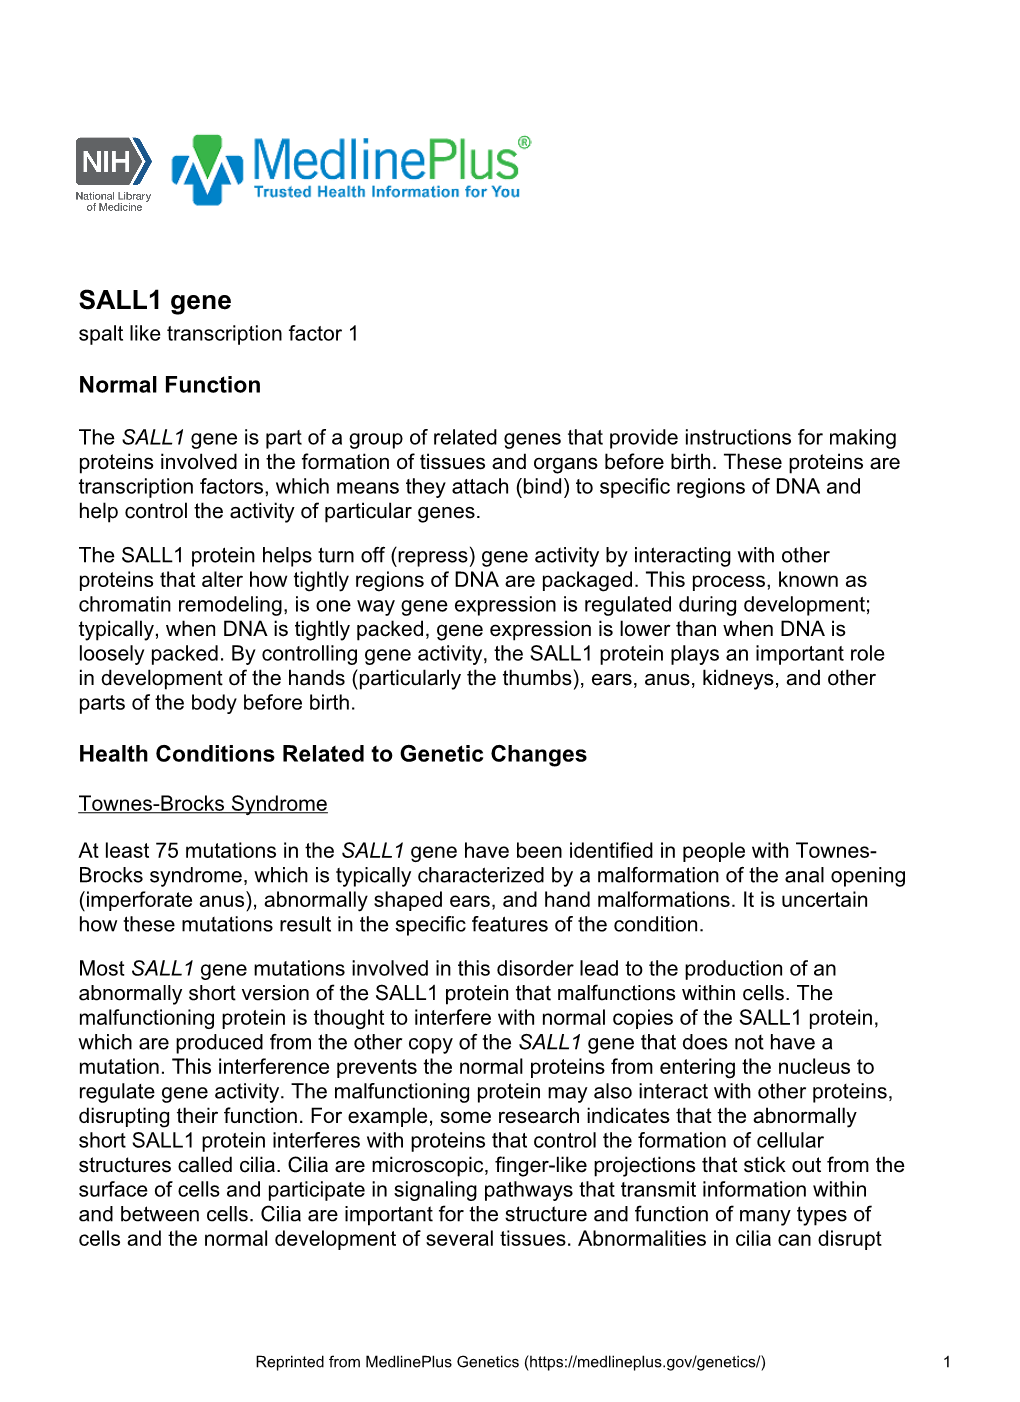 SALL1 Gene Spalt Like Transcription Factor 1